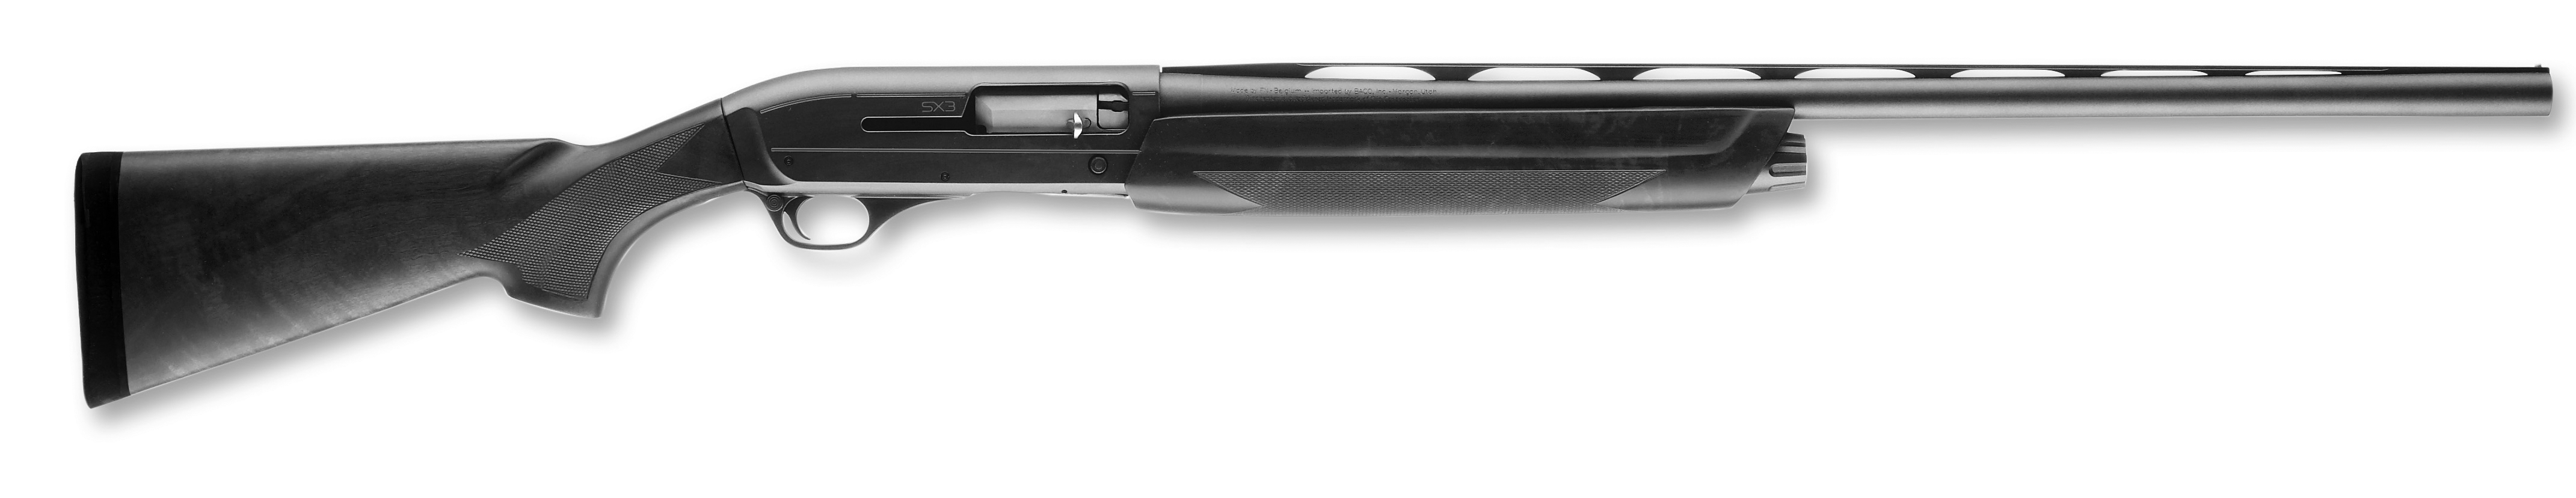 Патрон .270 winchester (6.9x64mm)